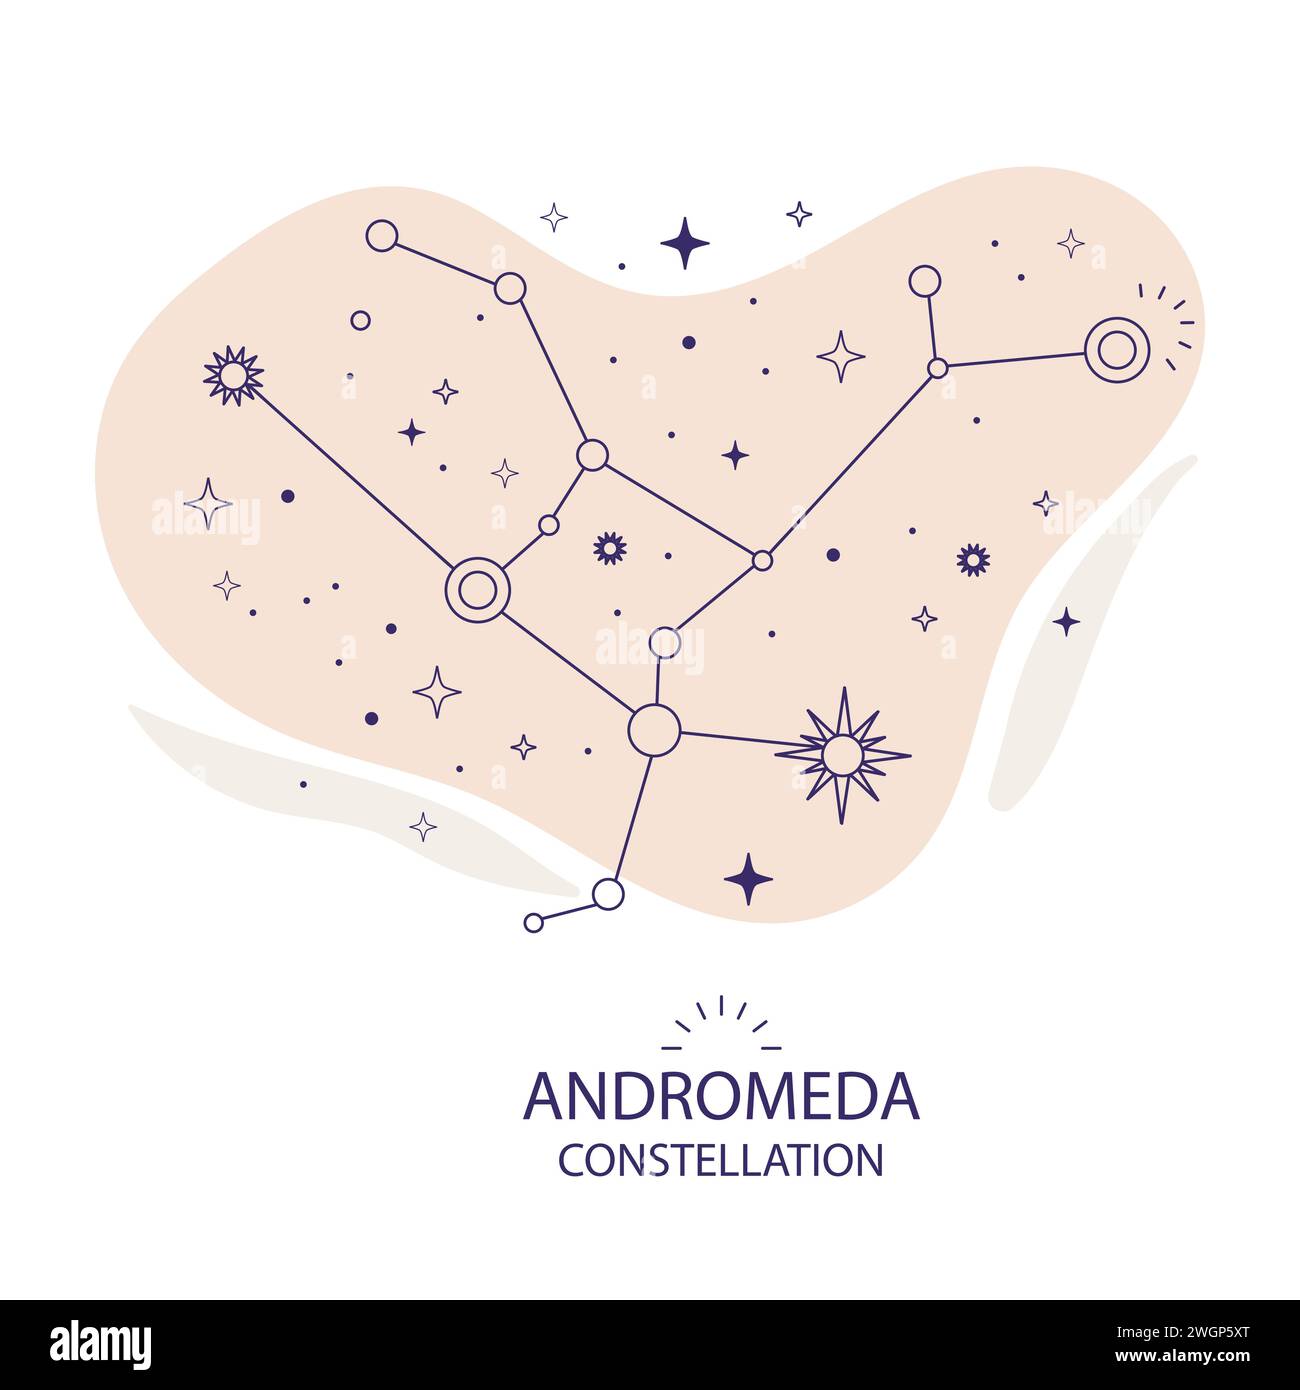 Constelación de Andrómeda de estrellas sobre un fondo blanco. Diseño boho esotérico místico para diseño de tela, tarot, astrología, papel de envoltura. Vector illu Ilustración del Vector